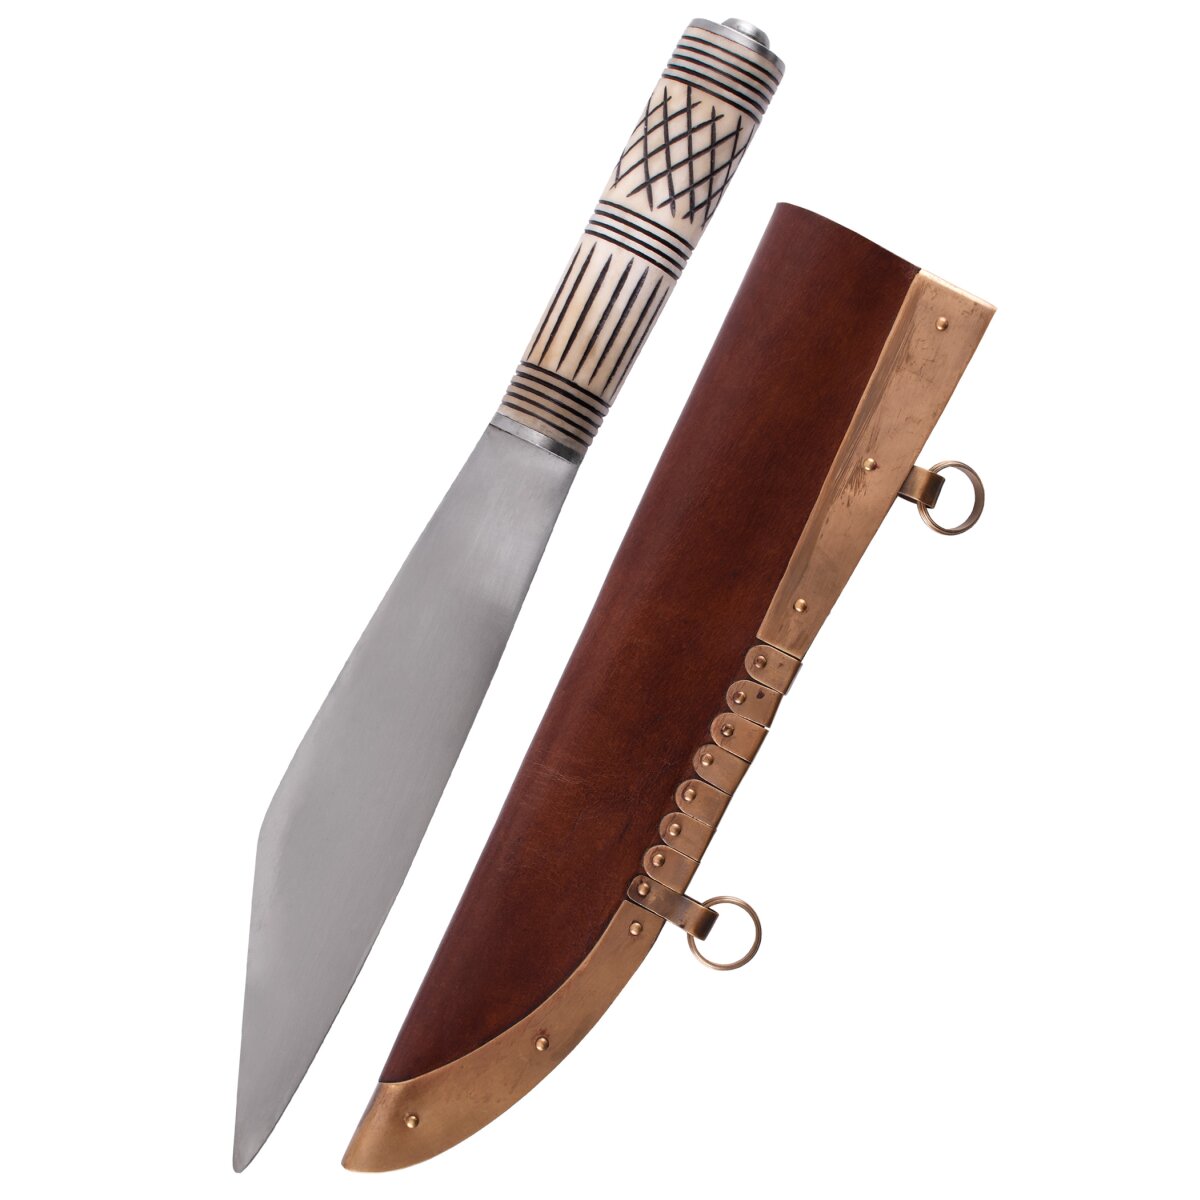 Viking Skramasax, couteau de sax avec manche en os,...